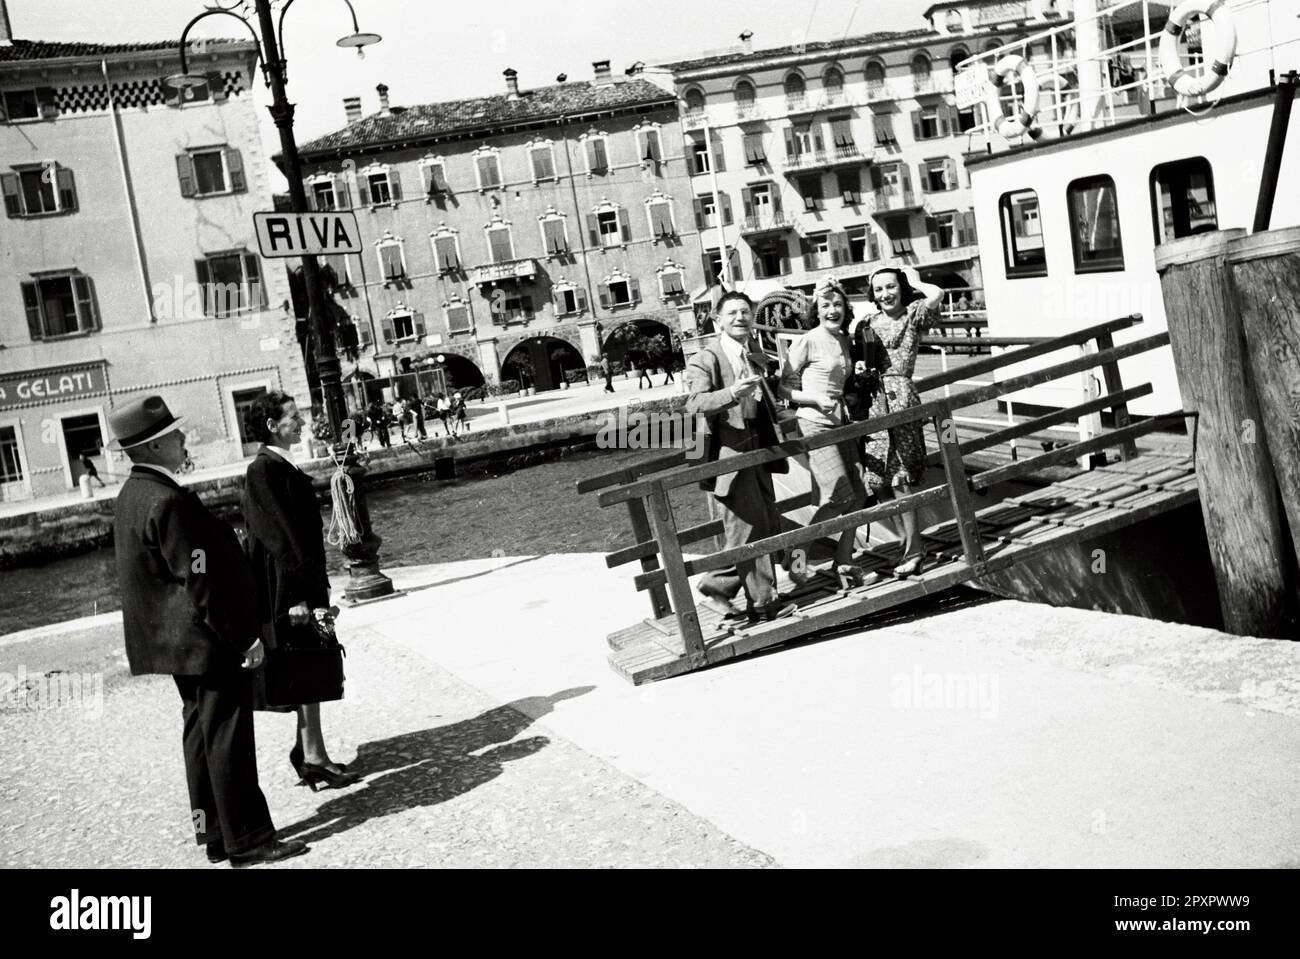 Riva del Garda (già Riva, Ripa in latino, Rìva in dialetto locale) è un comune italiano di 17 722 abitanti della provincia autonoma di Trento che fa parte della Comunità Alto Garda e Ledro.(Wikipedia) Foto de stock